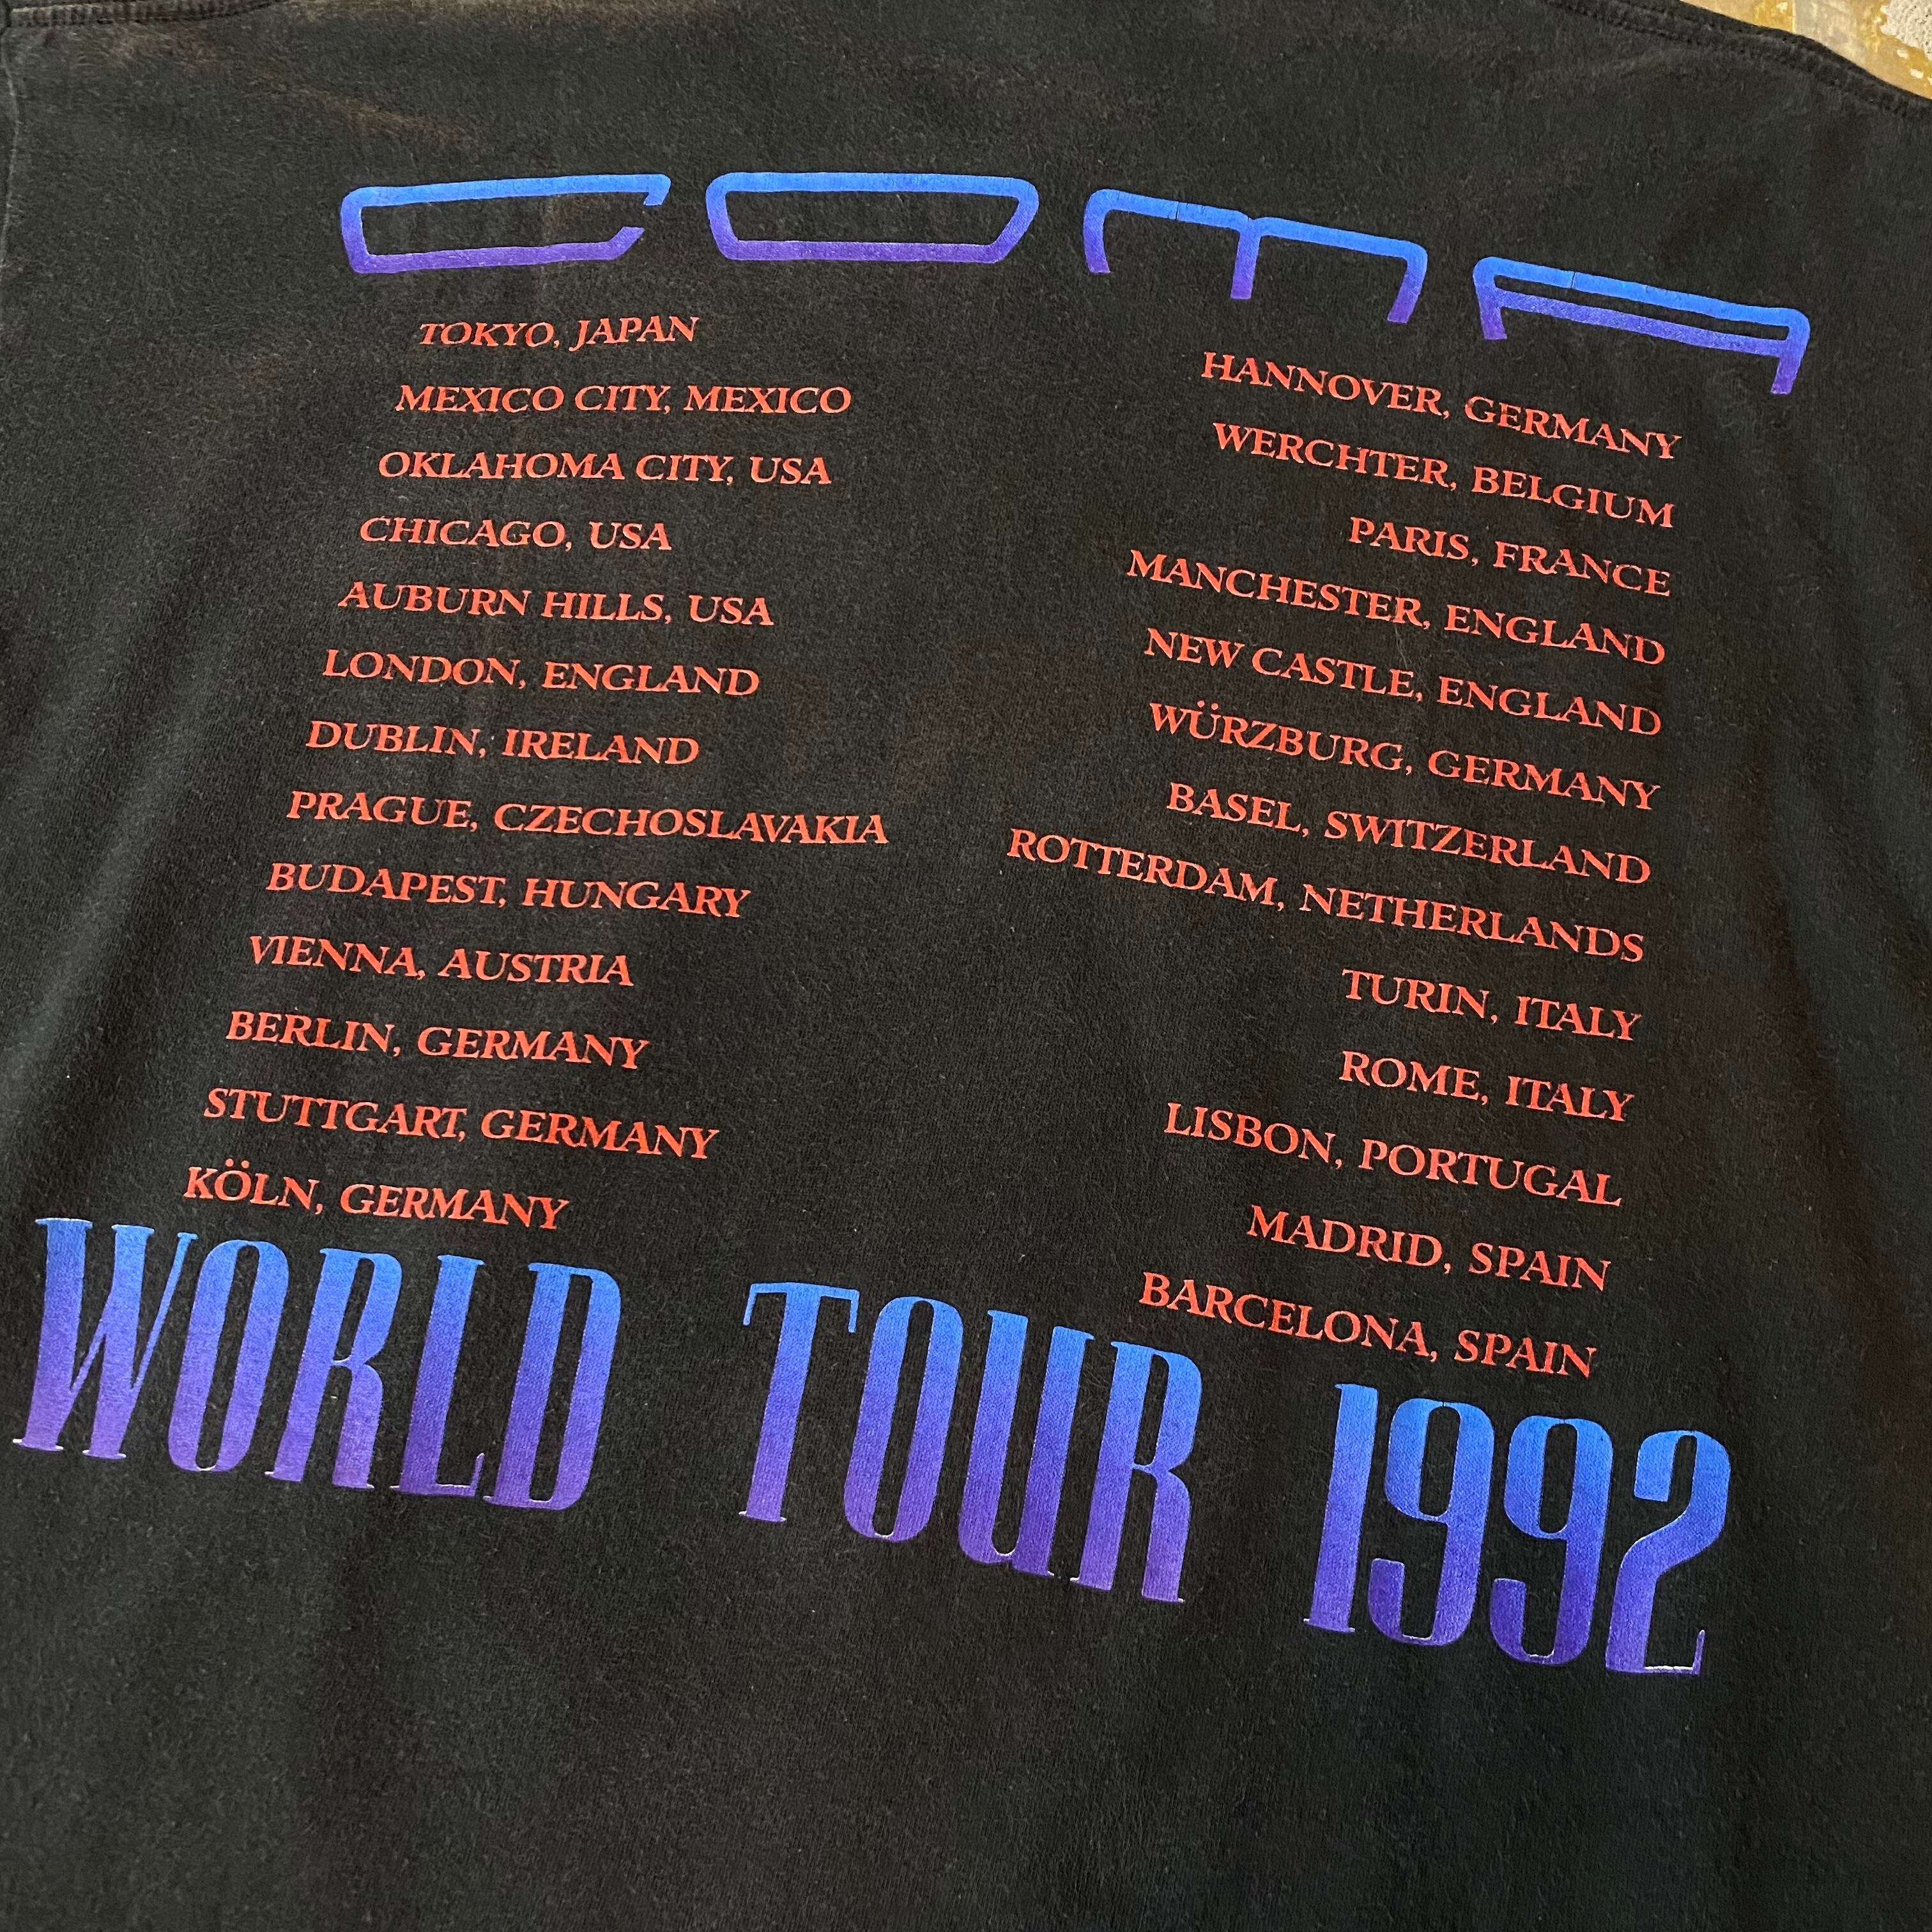 状態良好 ガンズアンドローゼズ 1992年製ヴィンテージ Tシャツ